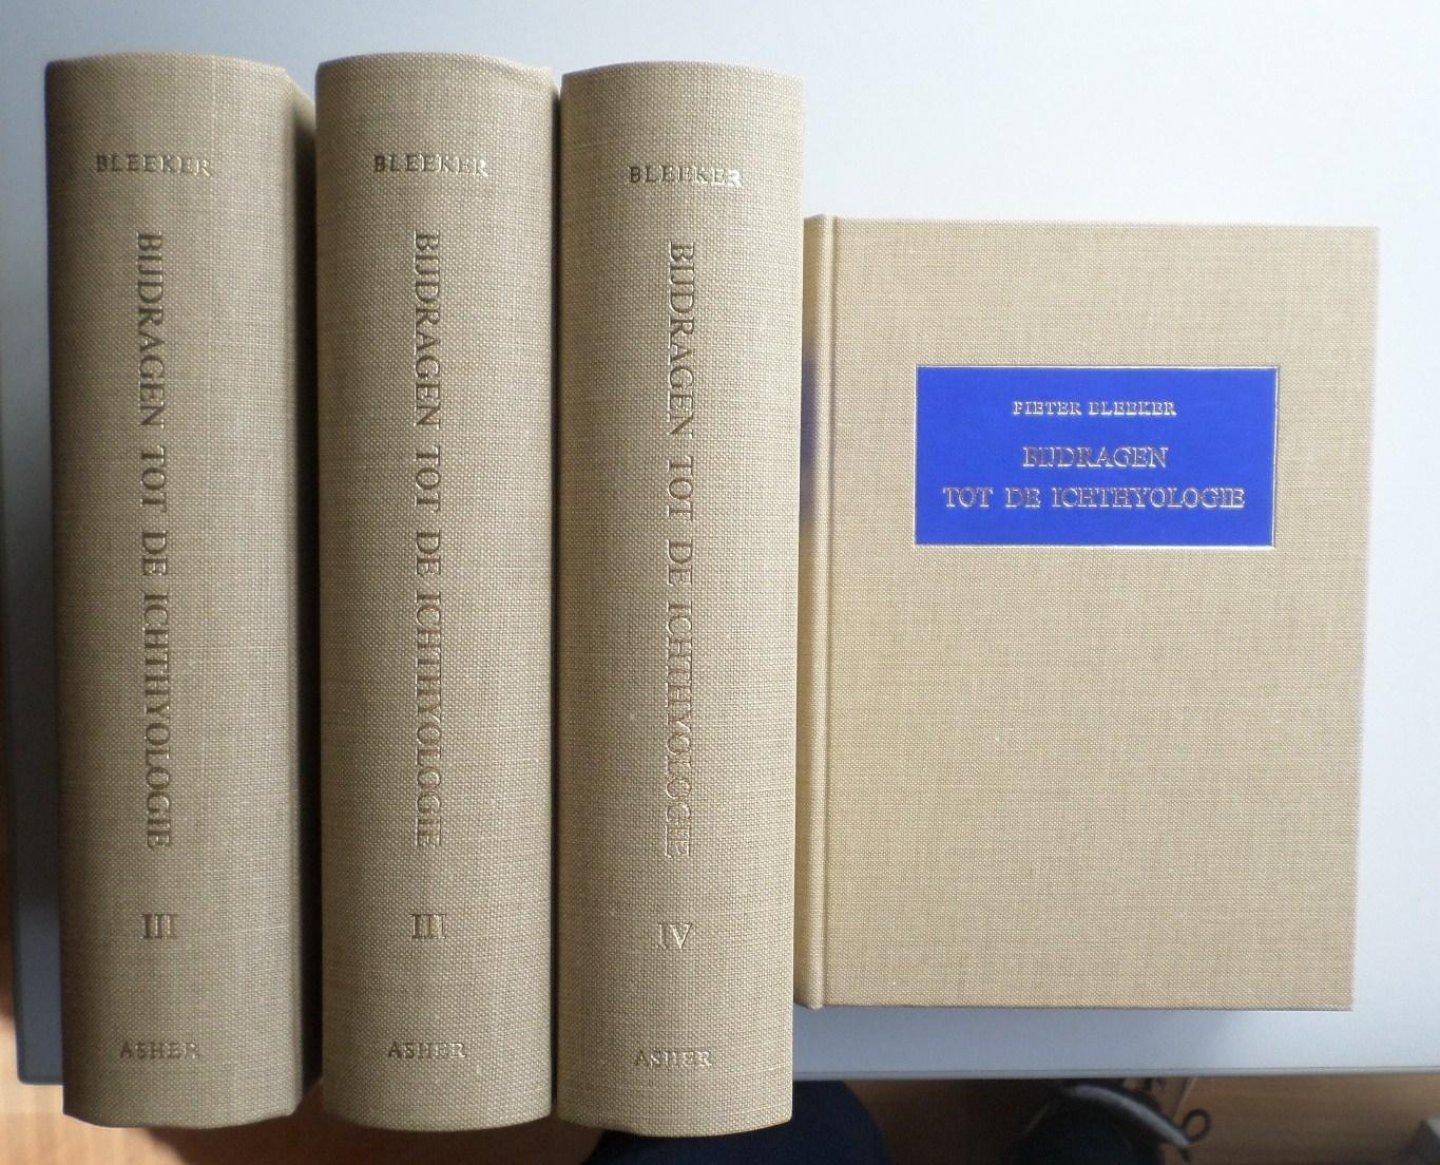 Bleeker, P., Lamme, W.H.  and  M. Boesman. - Bijdragen tot de Ichthyologie van de Indonesische Archipel. 4 Vols complete